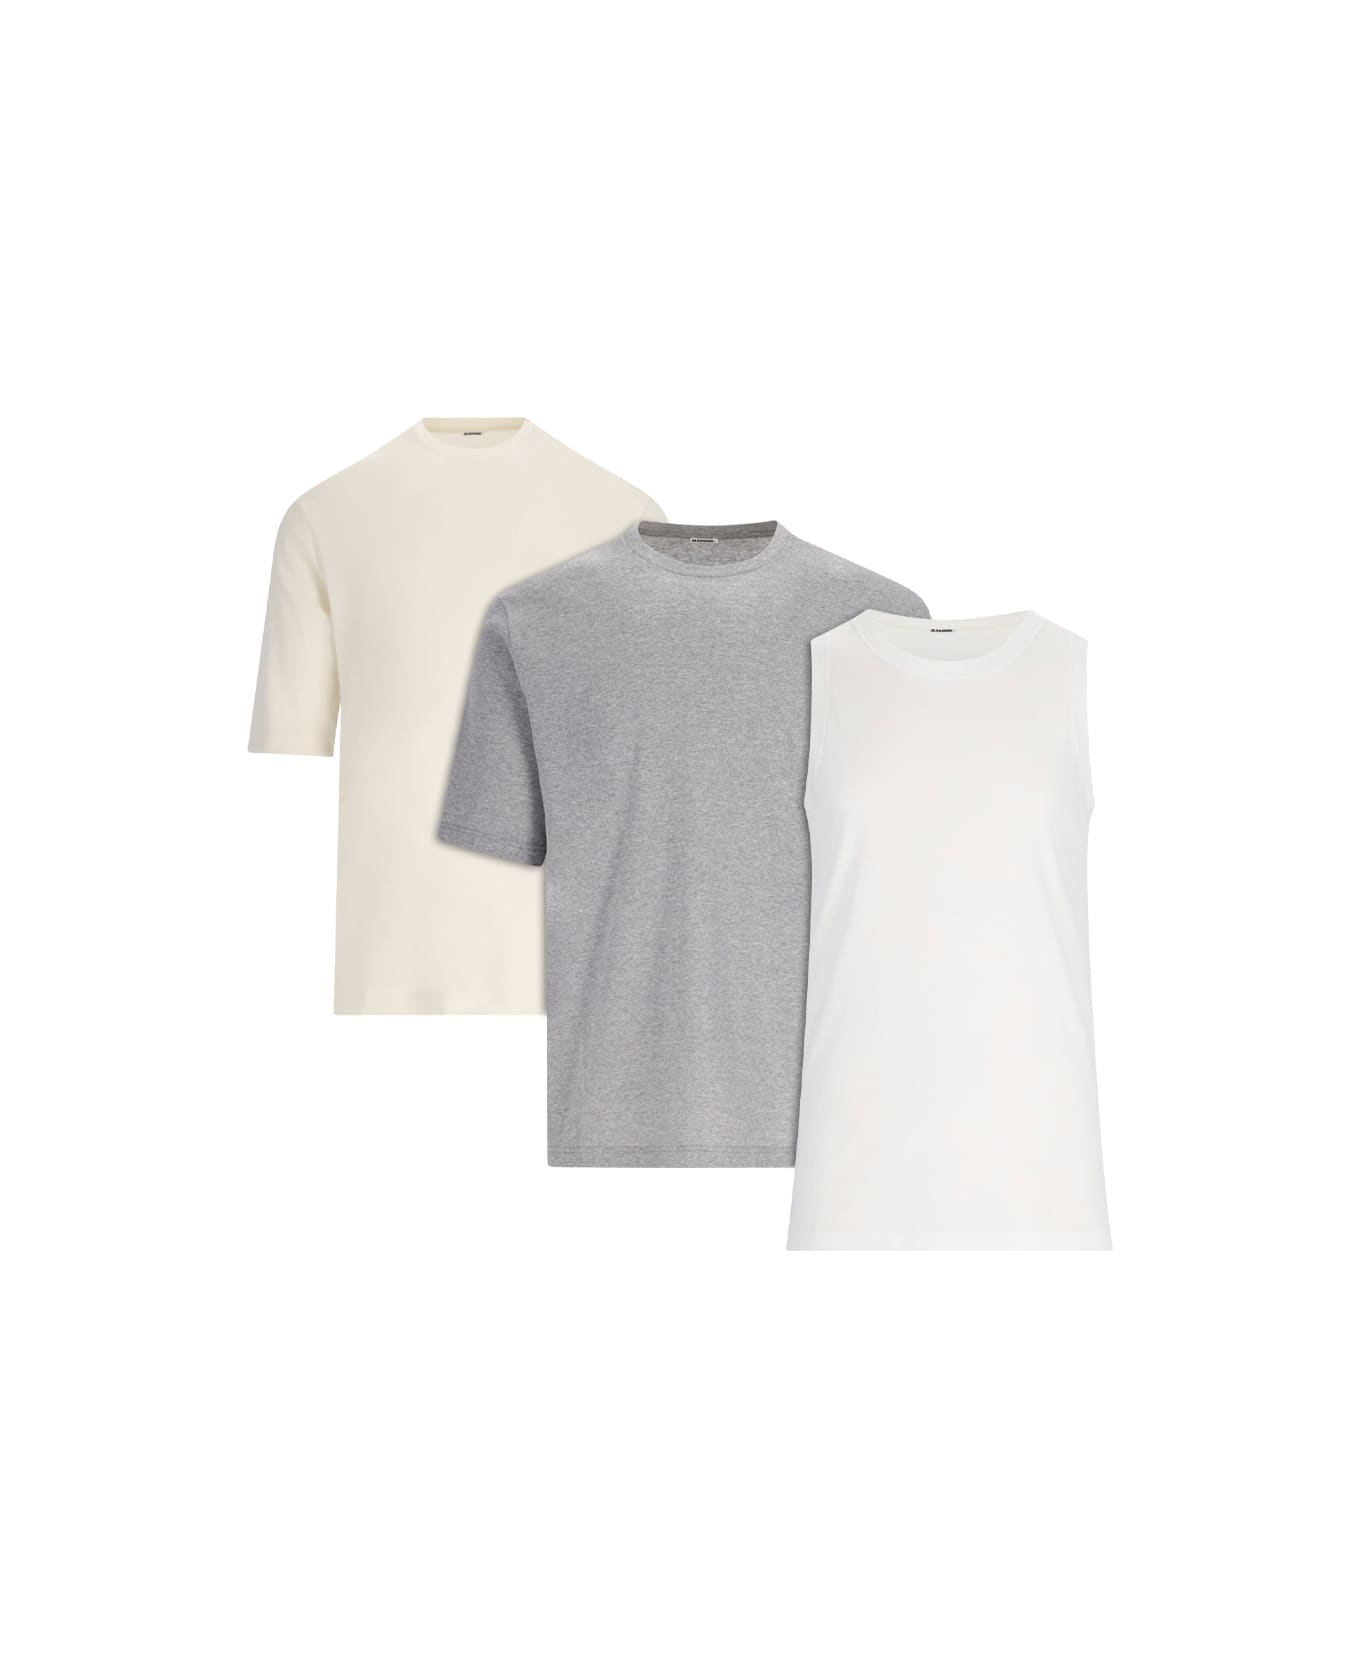 Jil Sander '3-pack' T-shirt Set - Multicolor シャツ